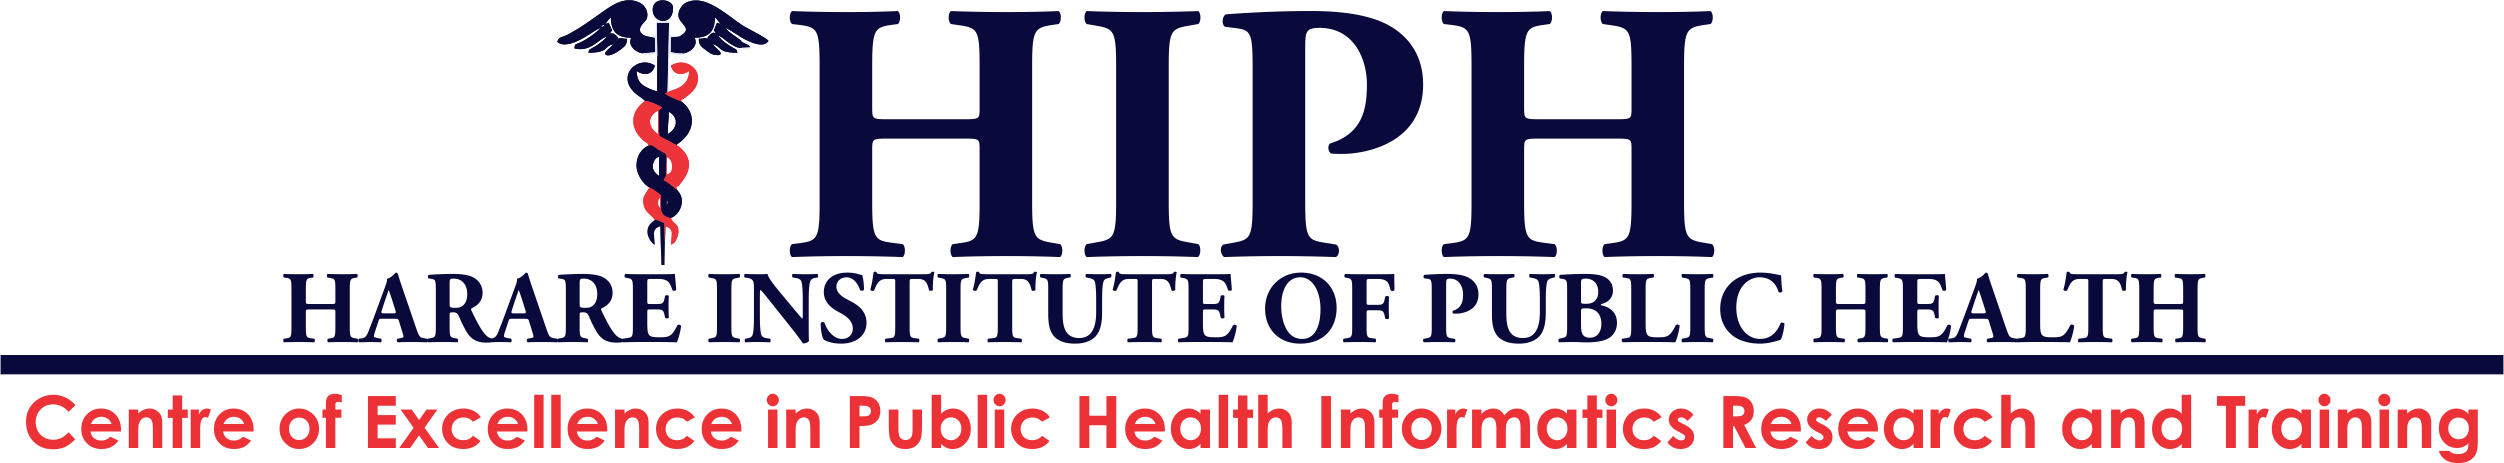 HIPH logo transaparent